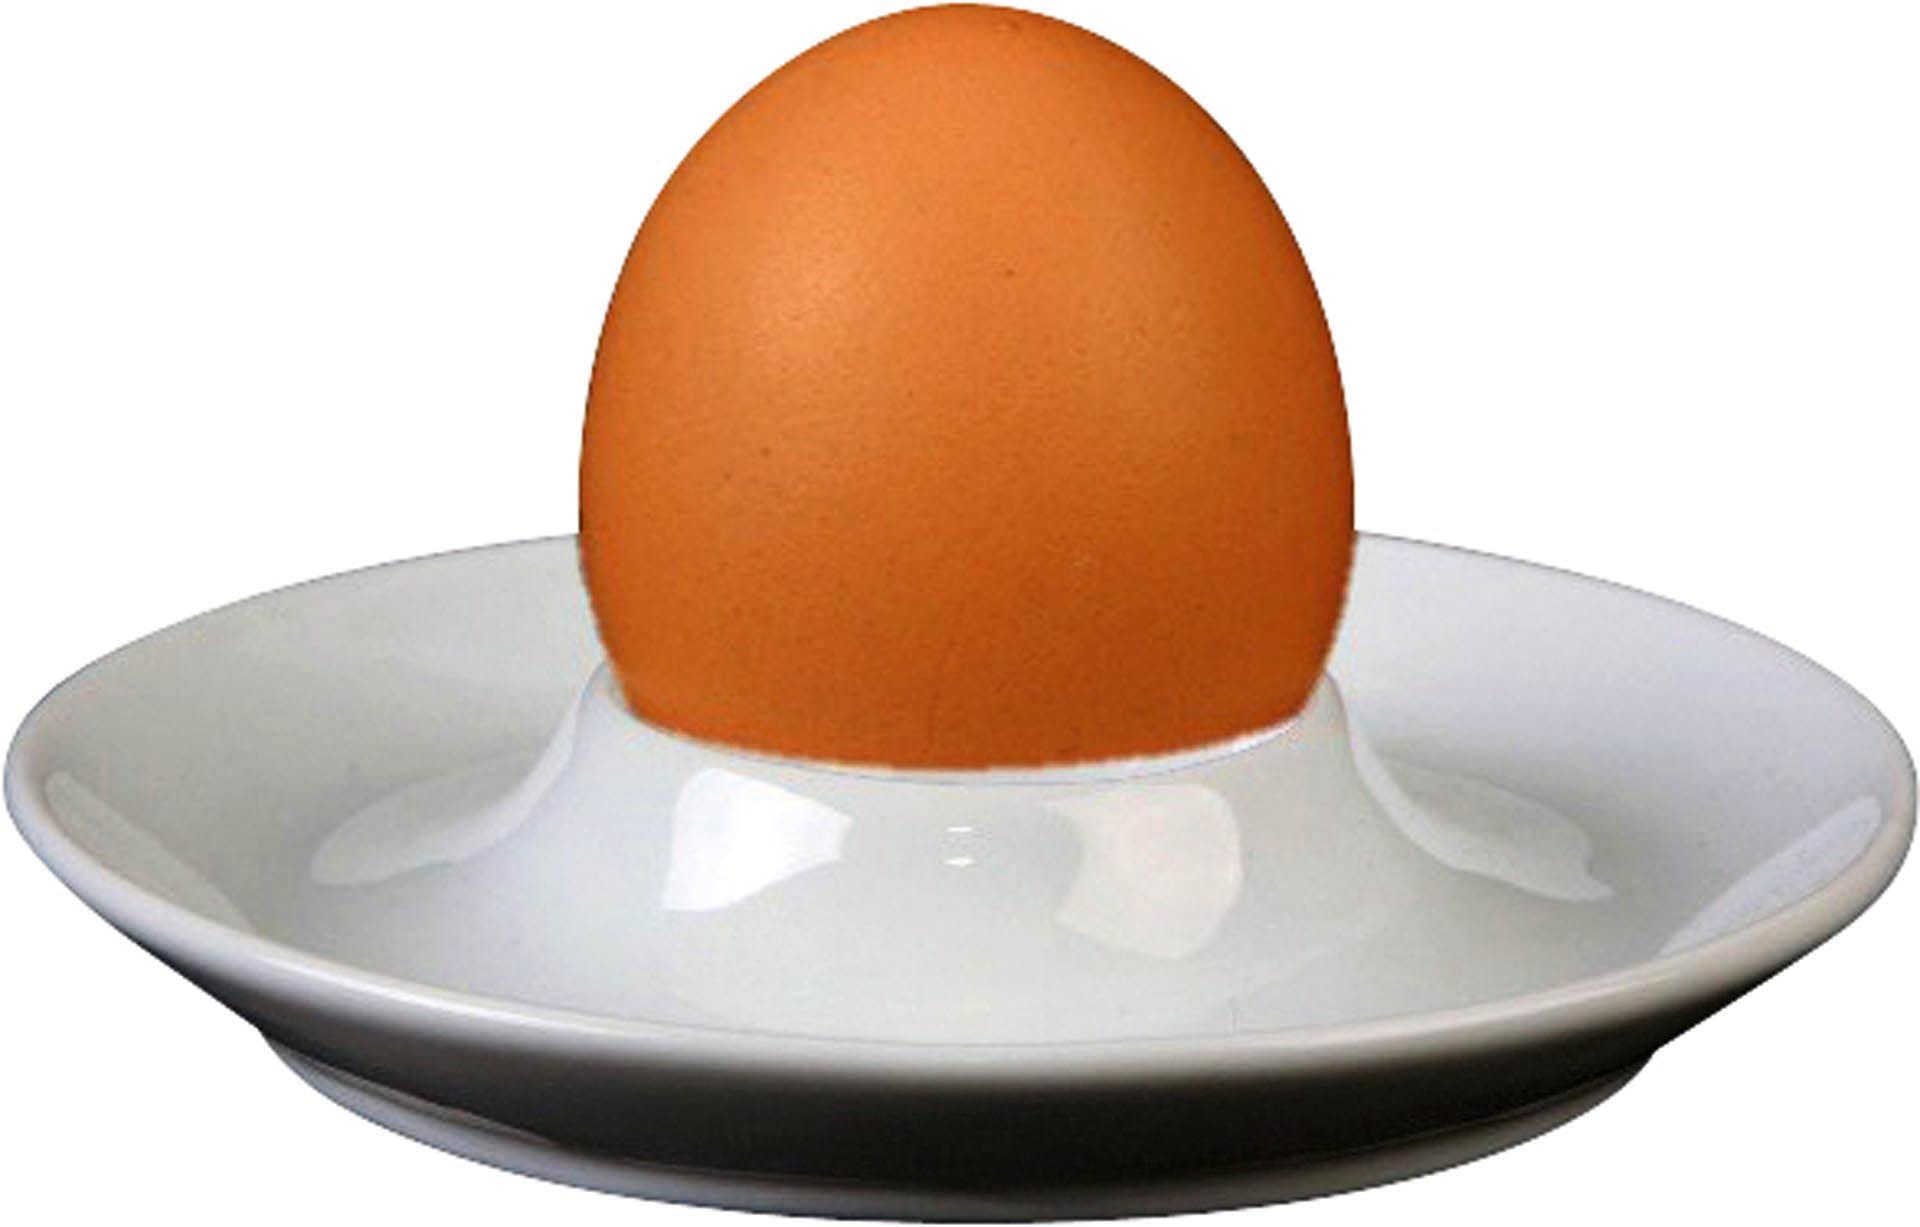 Was gehört zu jedem Frühstücktisch oder –buffet dazu? Der Eierbecher. Mit den passenden Eierbechern wird jedes Sonntags-Frühstück zum echten Genuss. Der Eierbecher fixiert das Ei, damit es, egal ob hart oder weich gekocht, mit dem Löffel ganz einfach ausgelöffelt werden kann. Bei uns finden Sie Eierbecher in verschiedenen Variationen.  &nbsp;